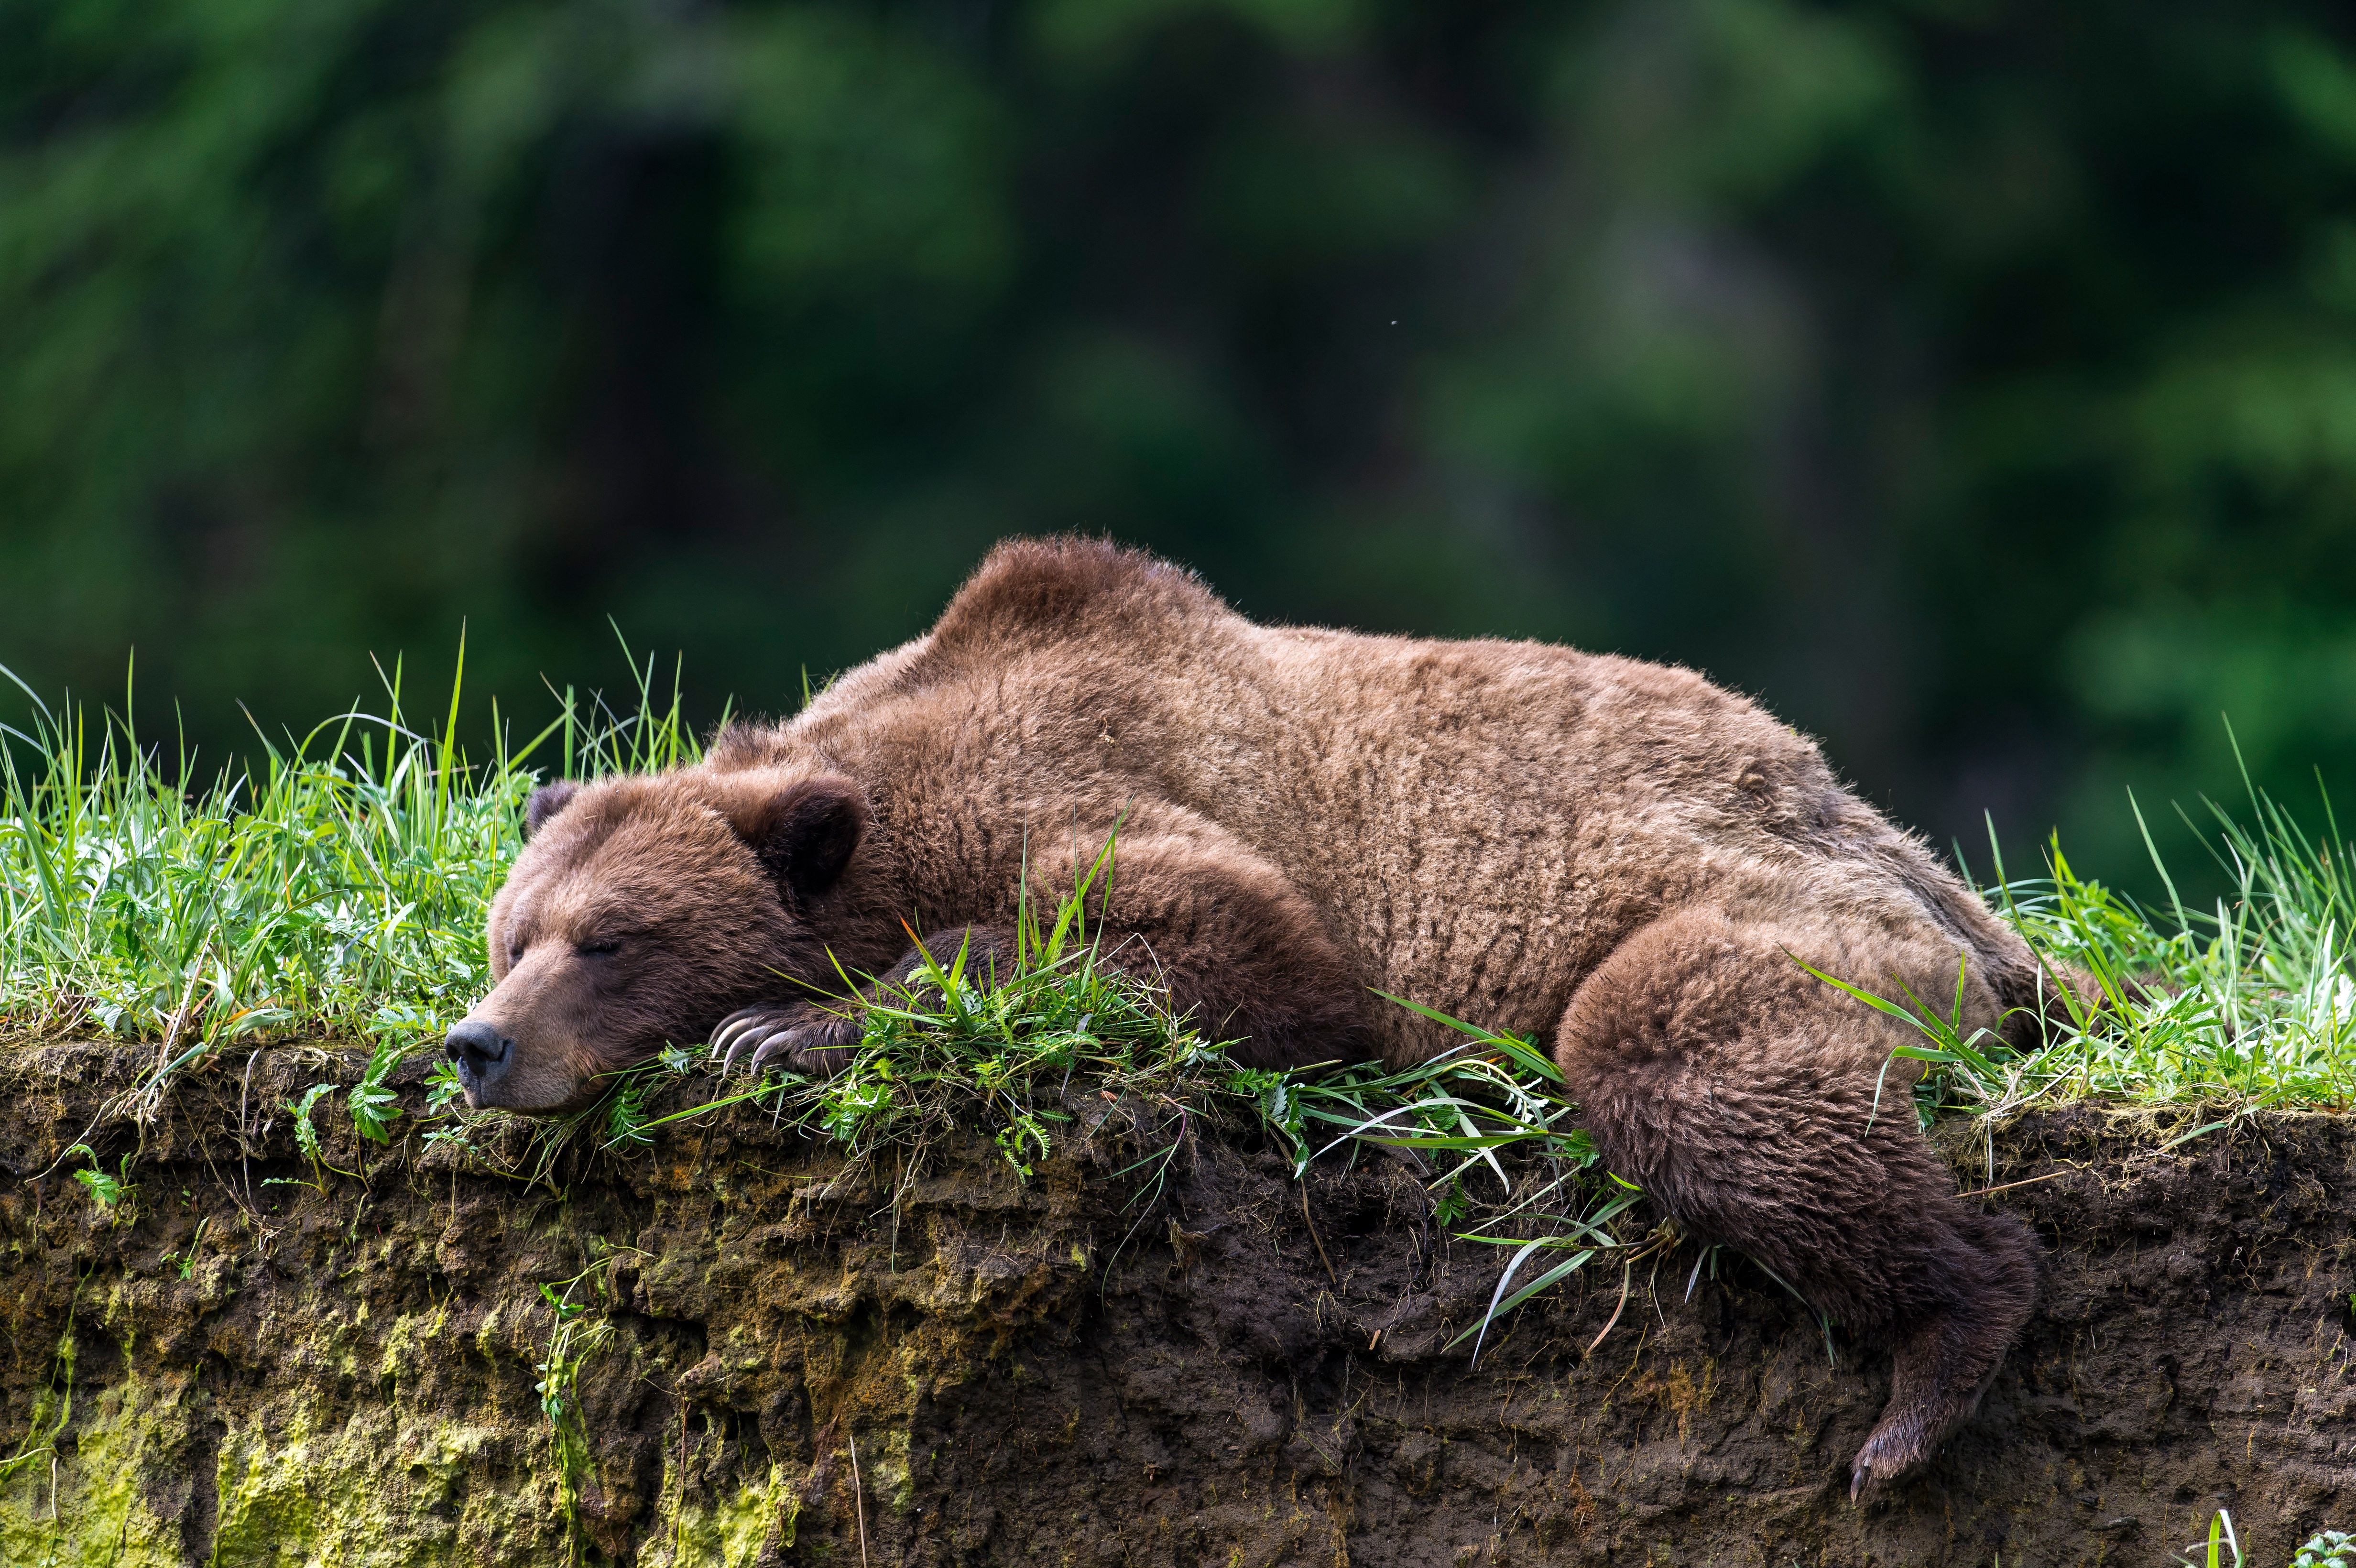 Скачать картинку Животные, Медведи, Медведь, Спать в телефон бесплатно.